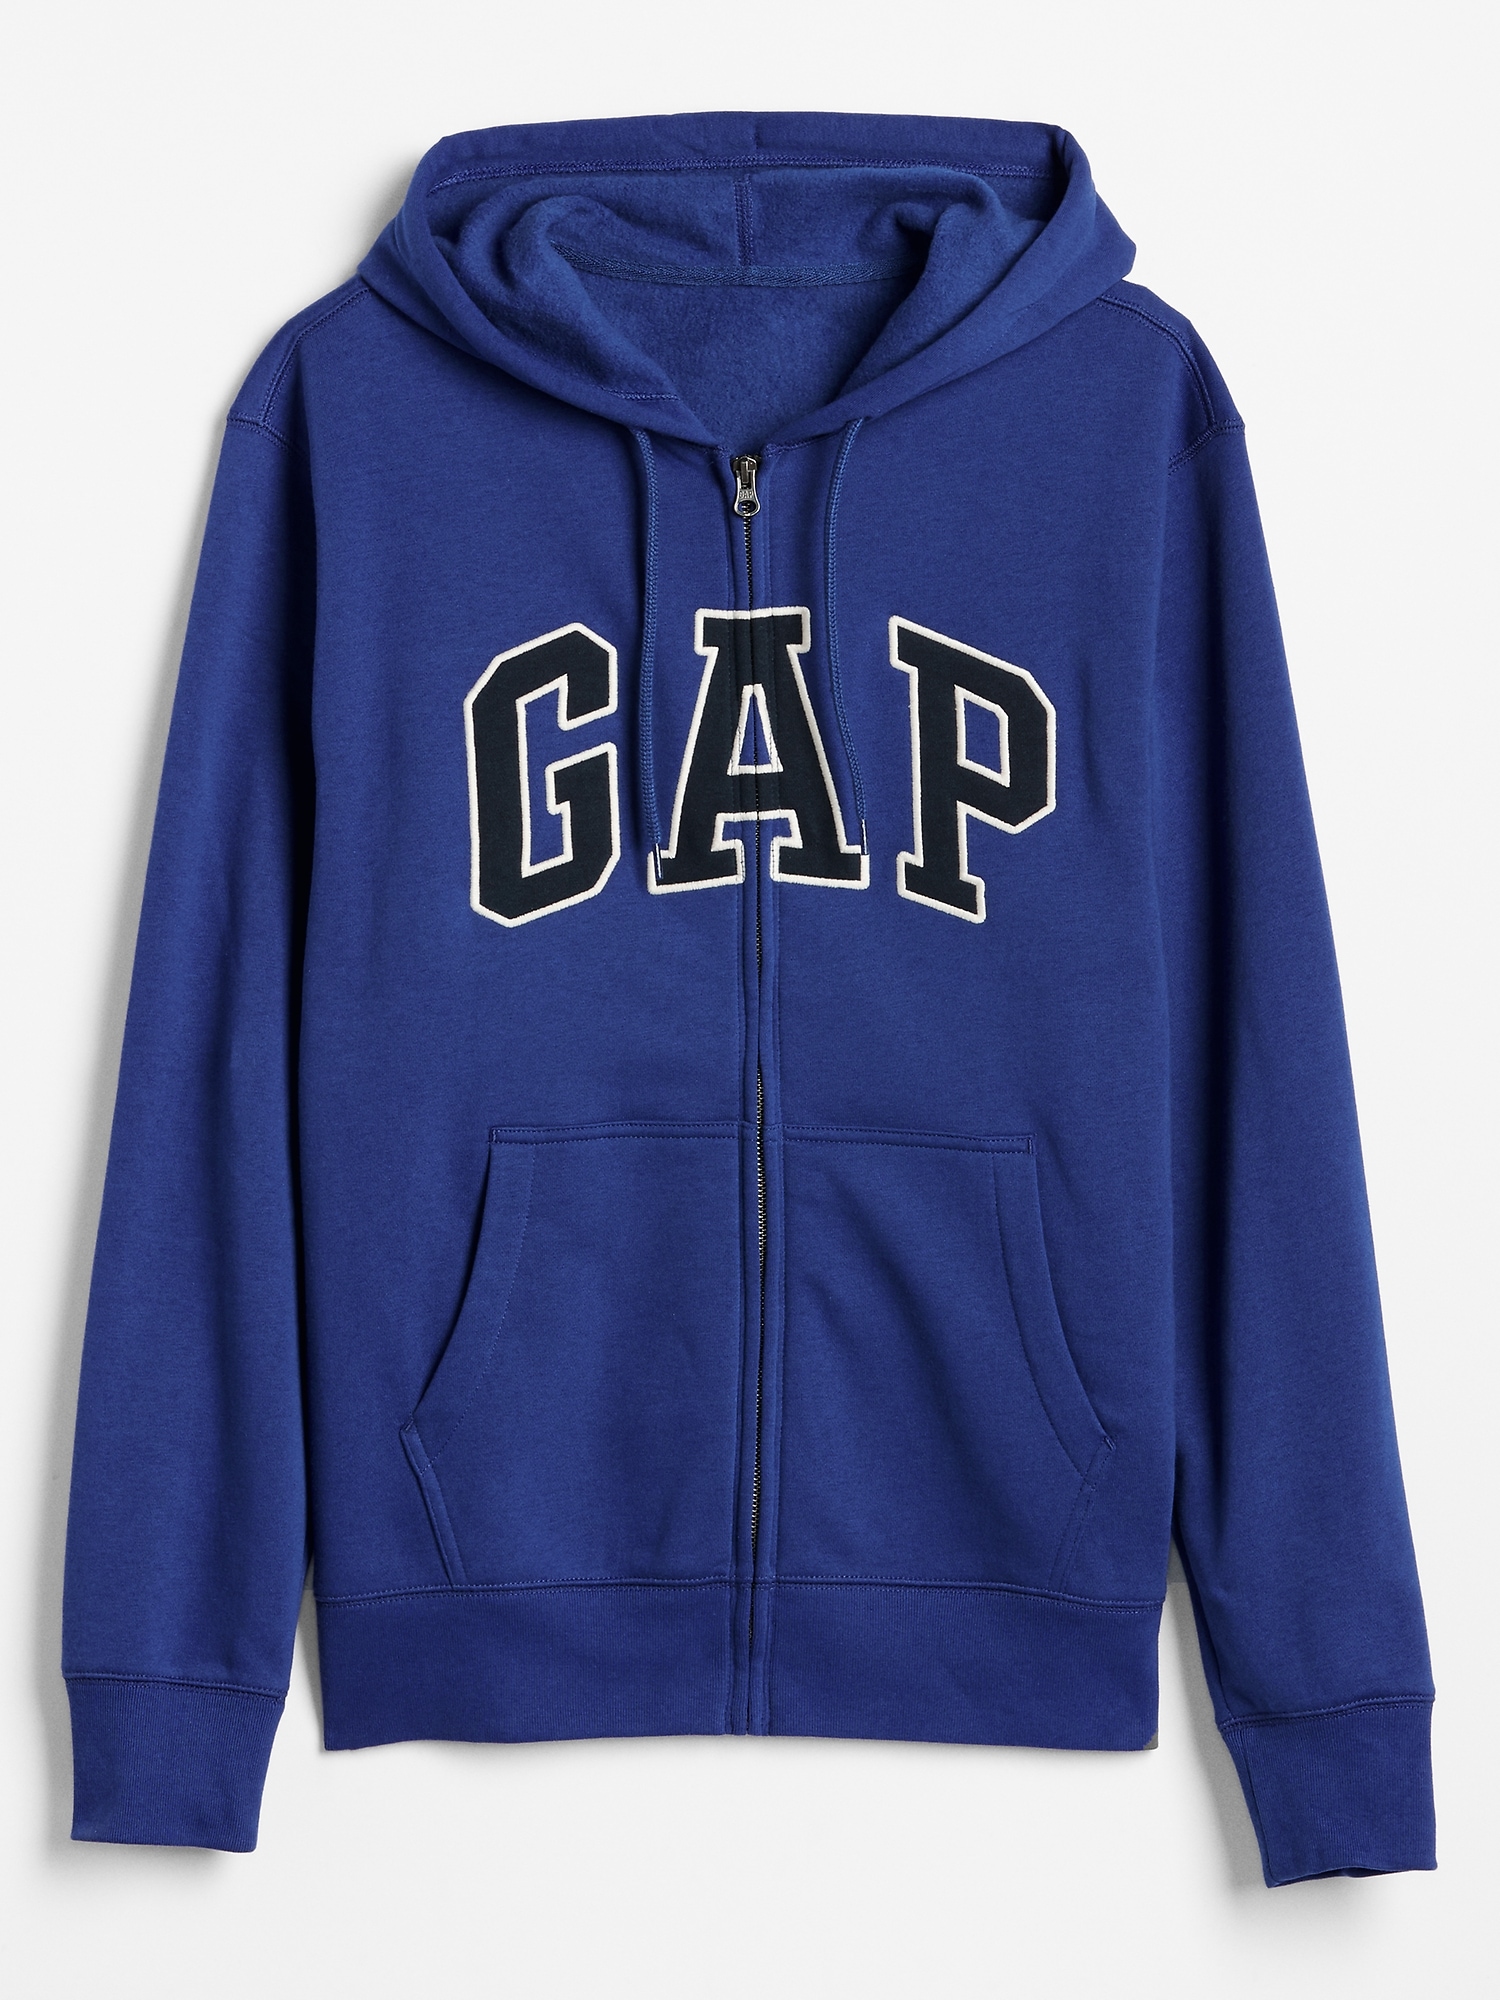 blue gap jacket